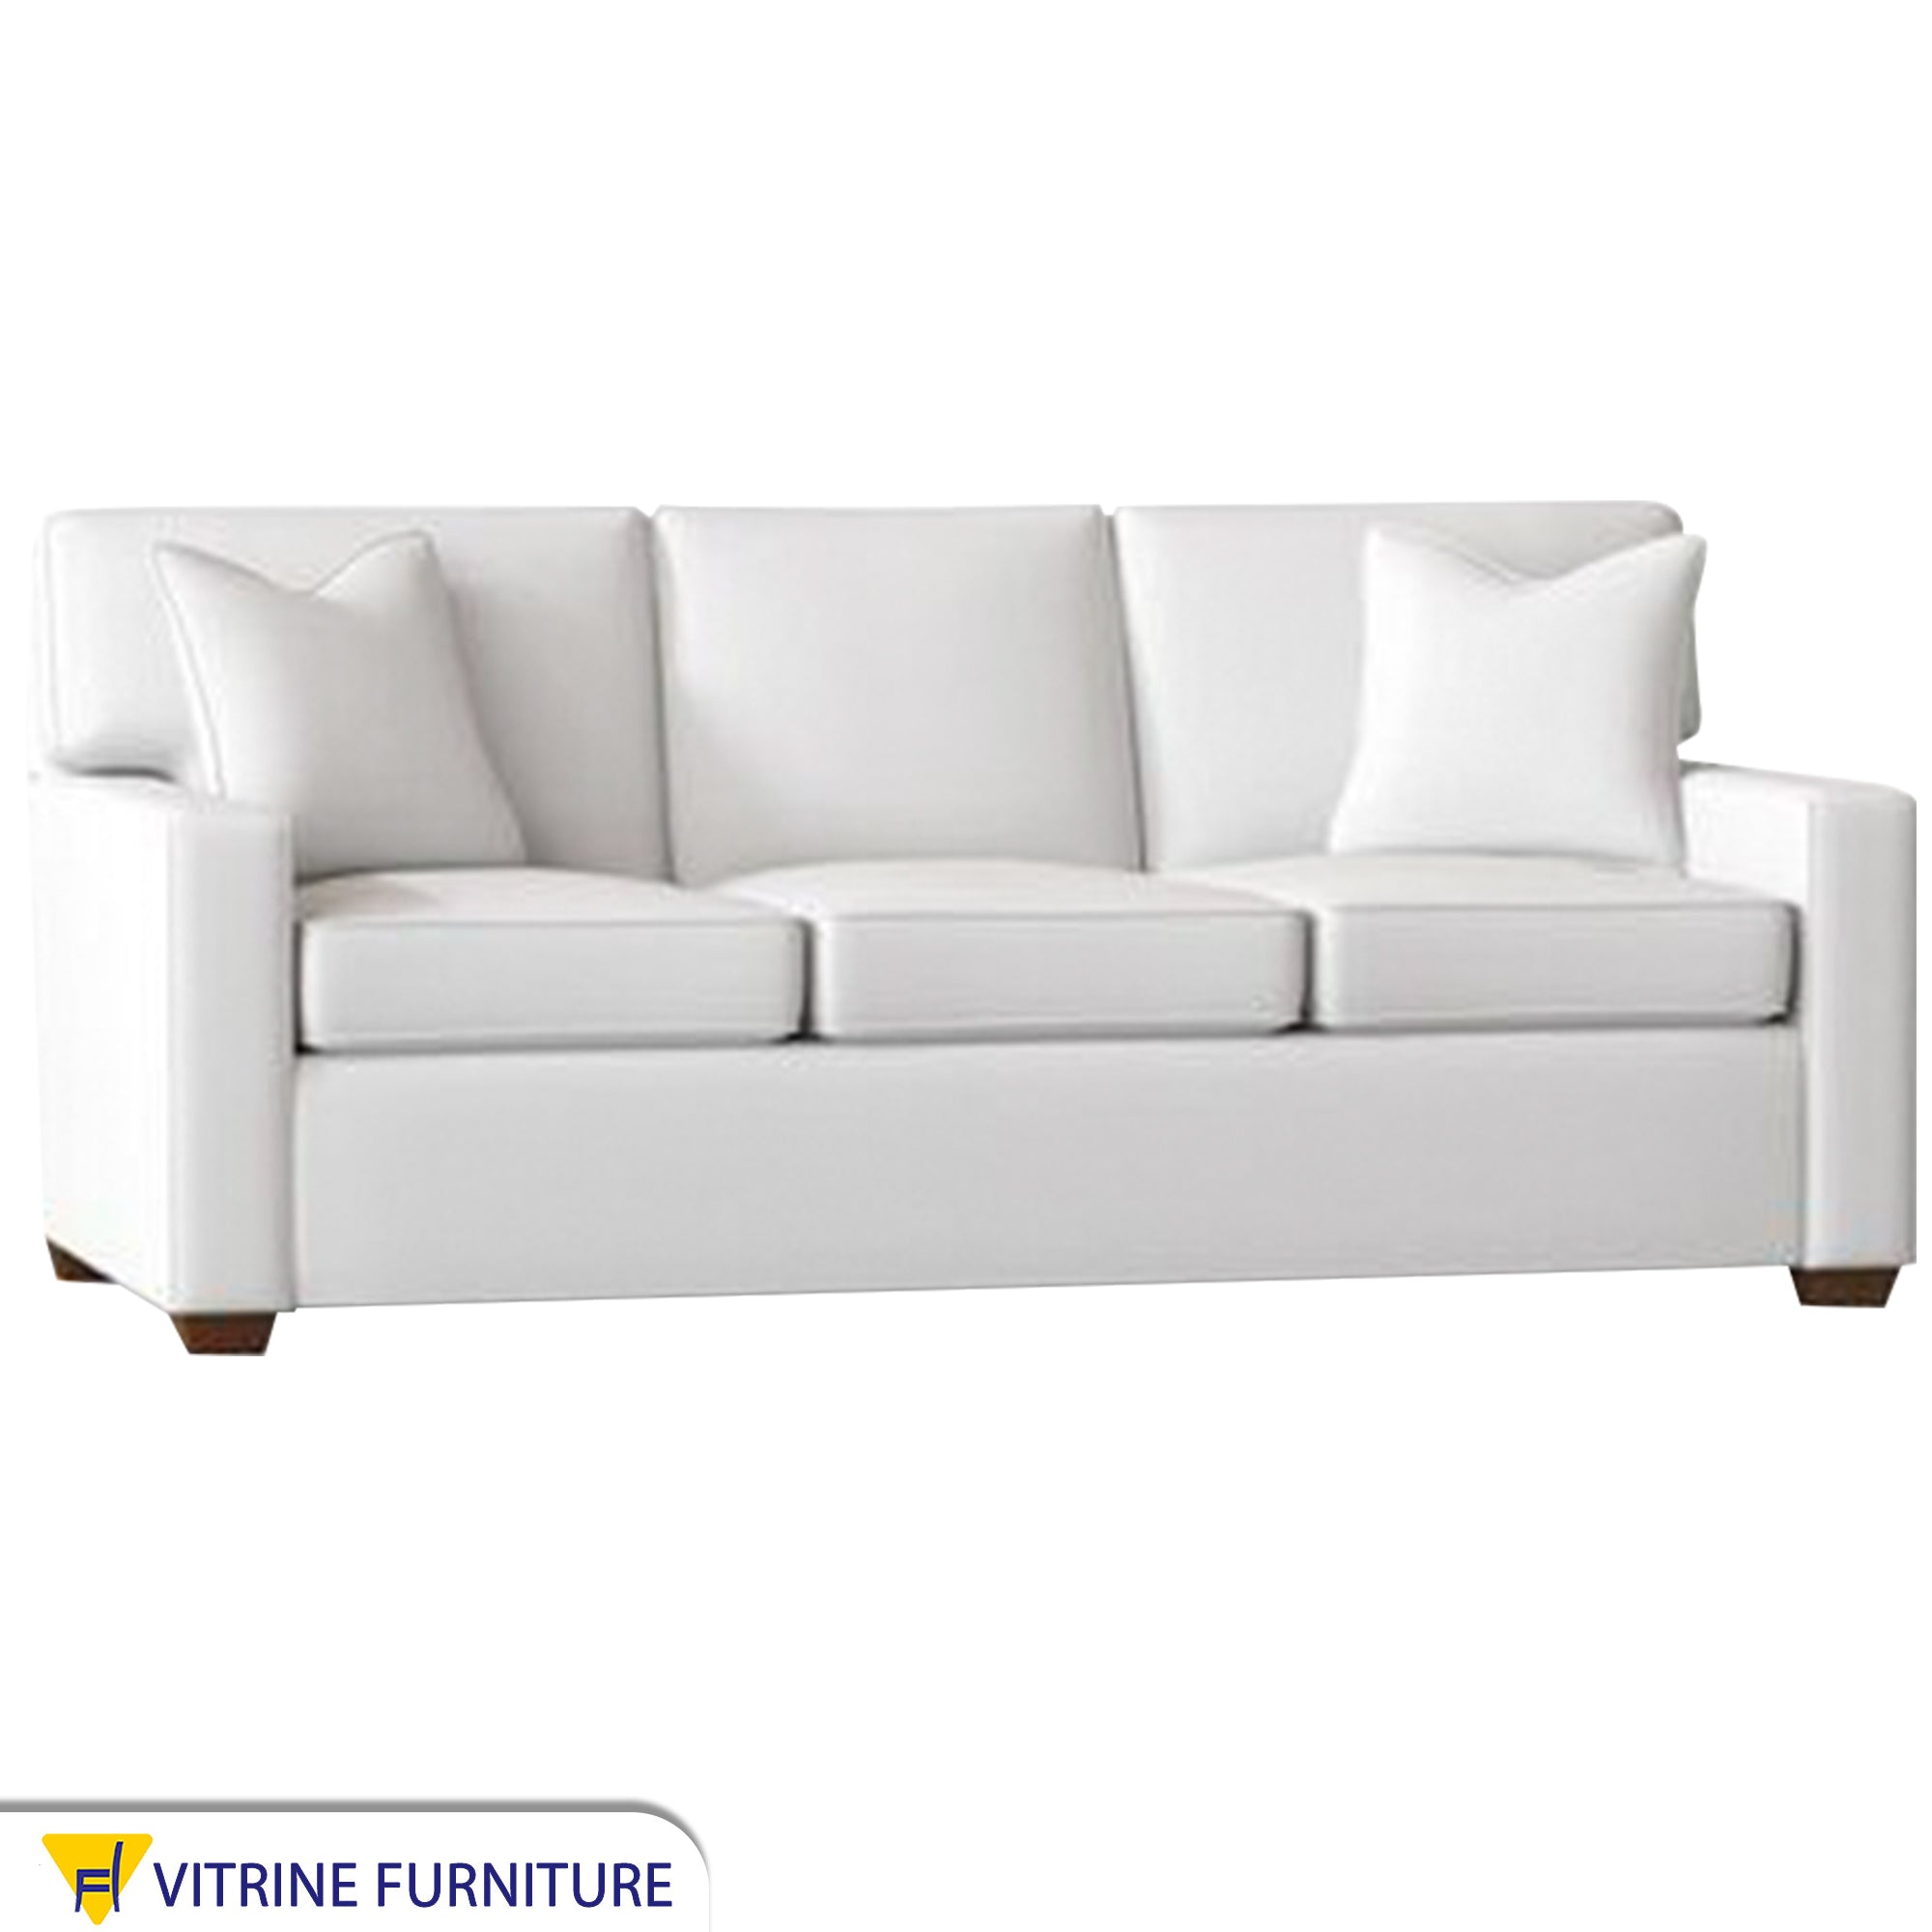 Triple sofa in elegant white color